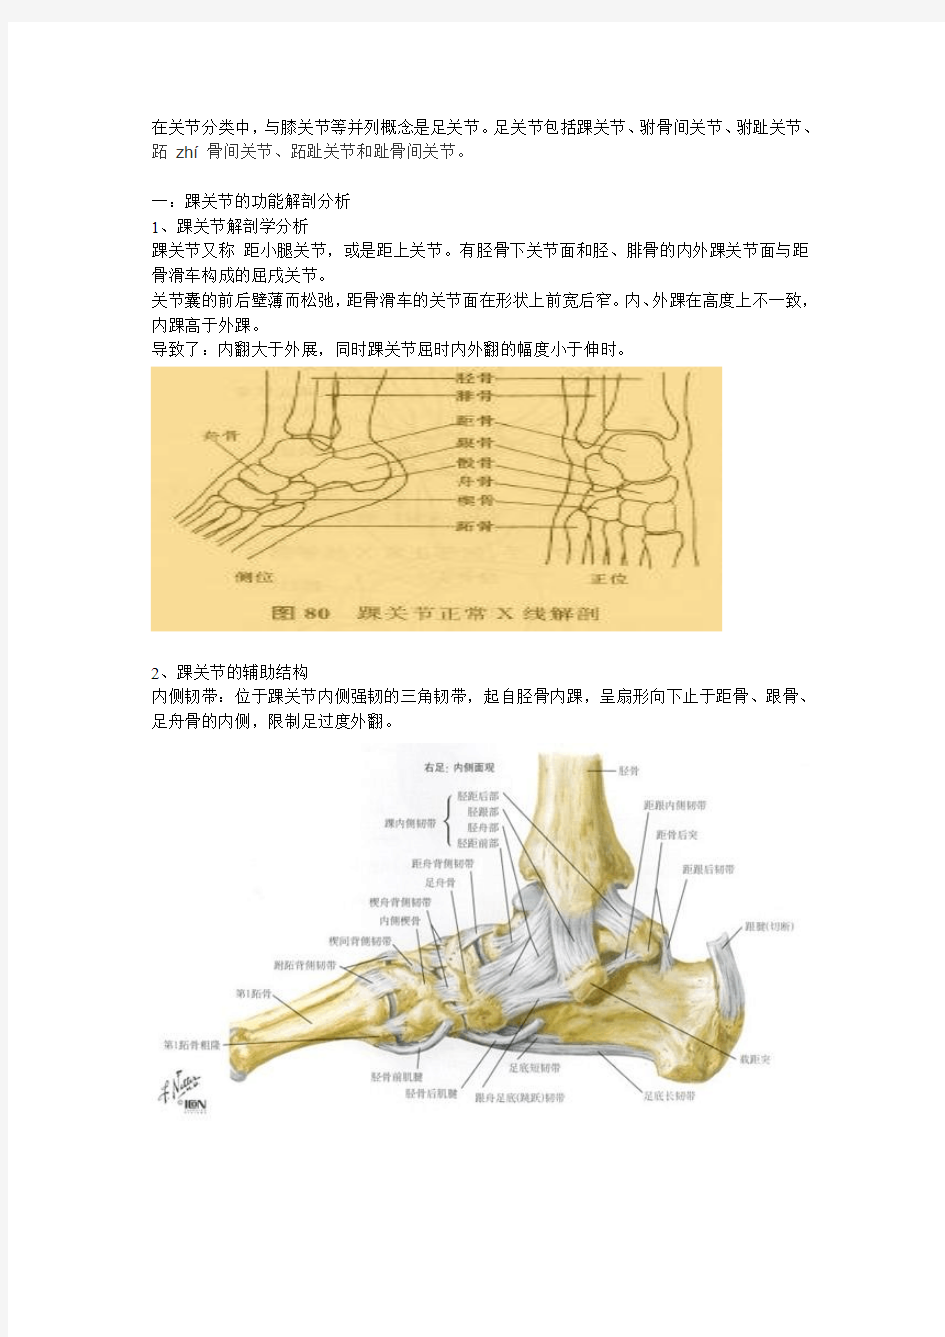 踝关节功能解剖、损伤与恢复